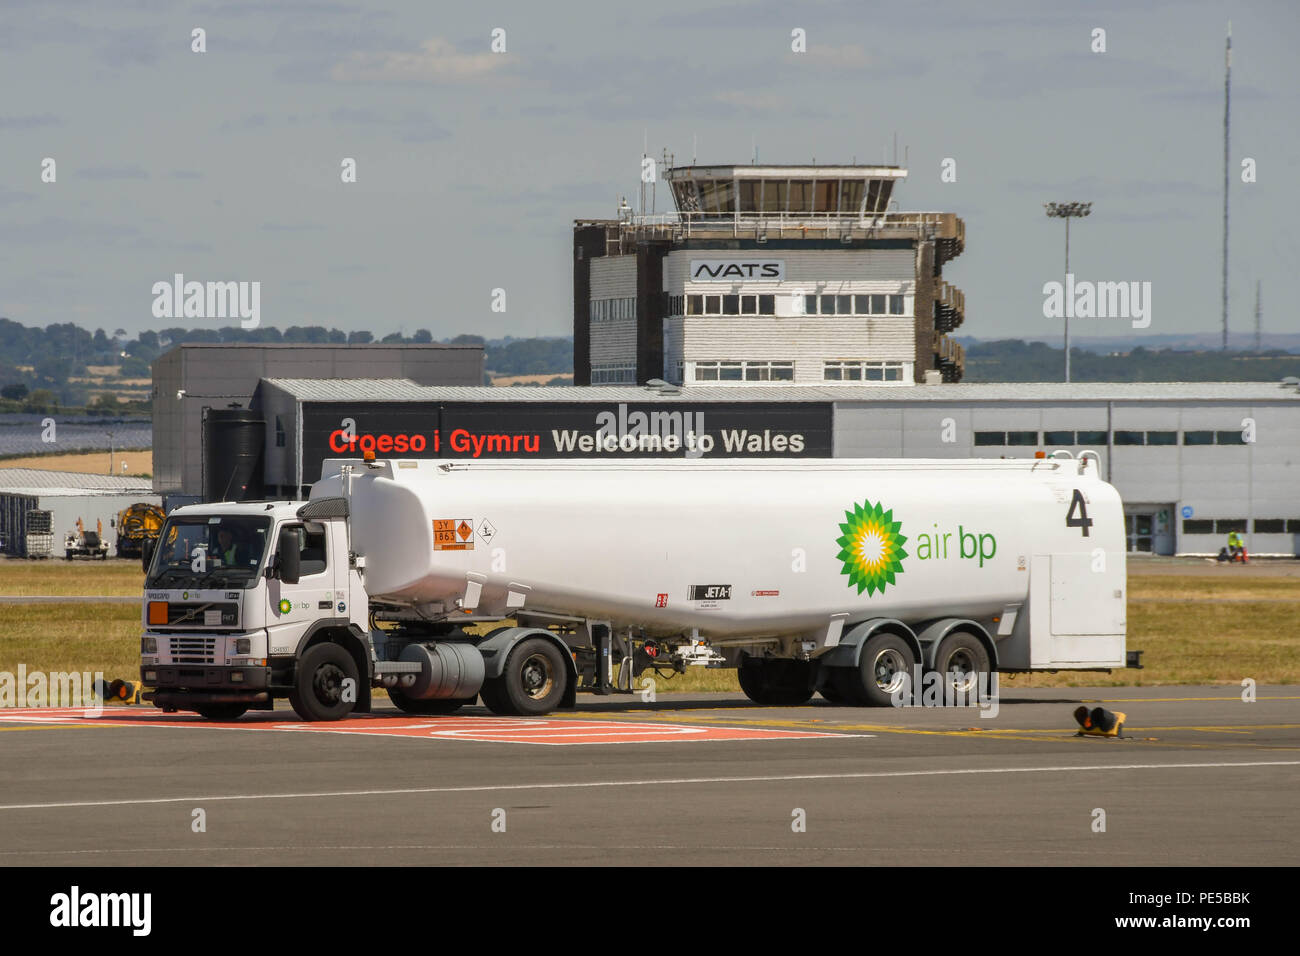 Grand camion-citerne de carburant véhicule exploité par Air BP avec la conduite de carburant aviation le long d'une voie de circulation à l'aéroport de Cardiff au Pays de Galles Banque D'Images